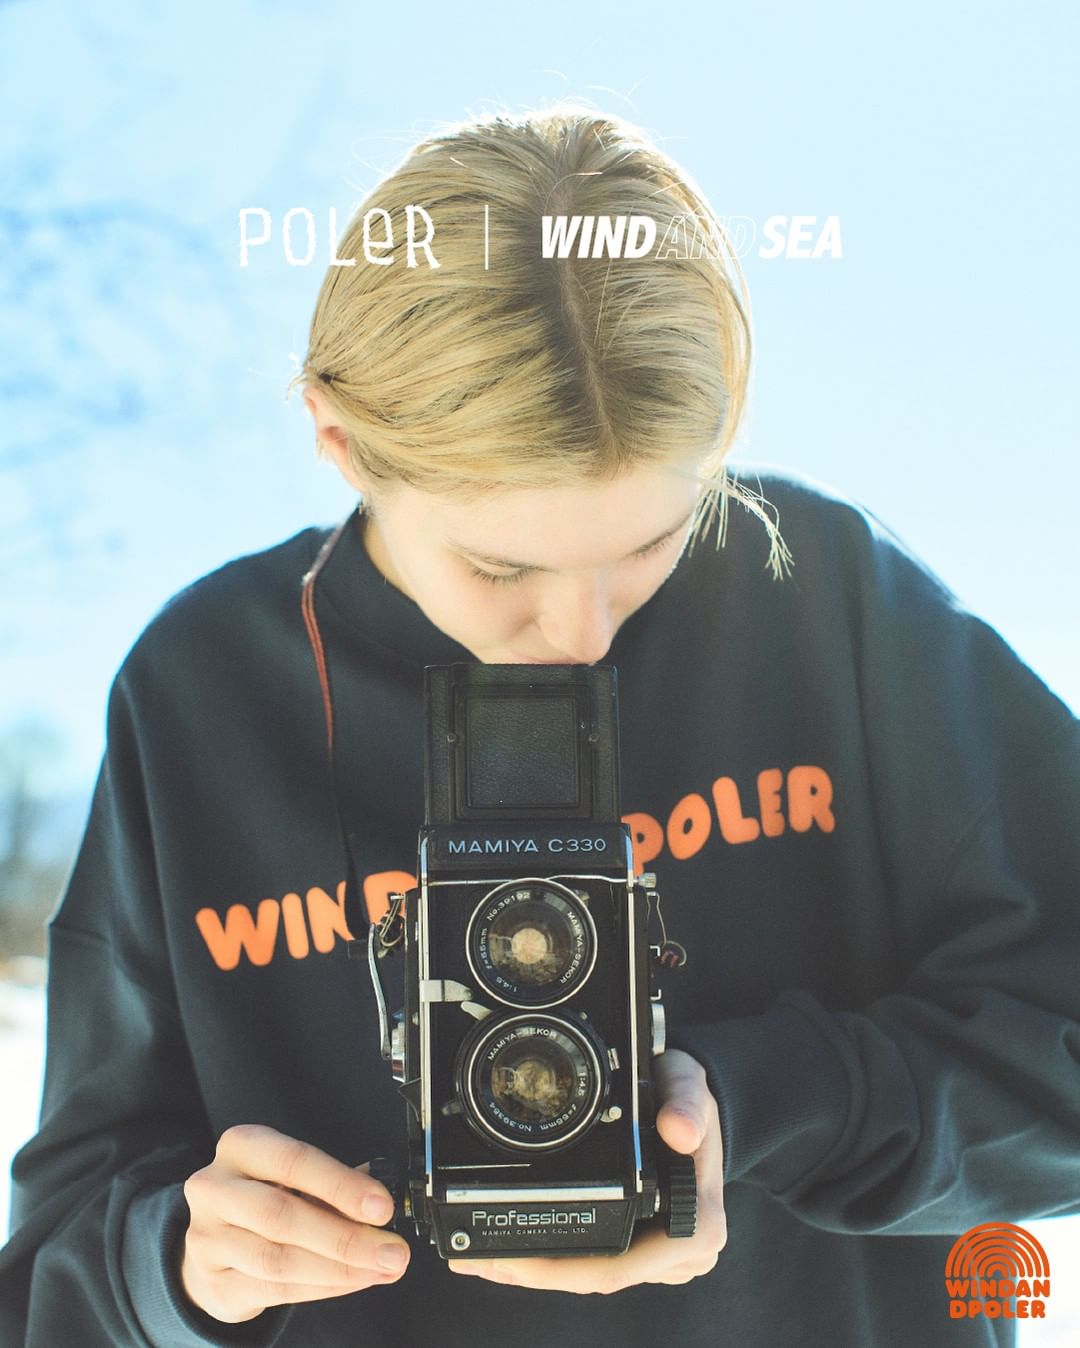 【1/20 発売】WIND AND SEA × PoLER “Deep Winter Capsule collection” (ウィンダンシー ポーラー)